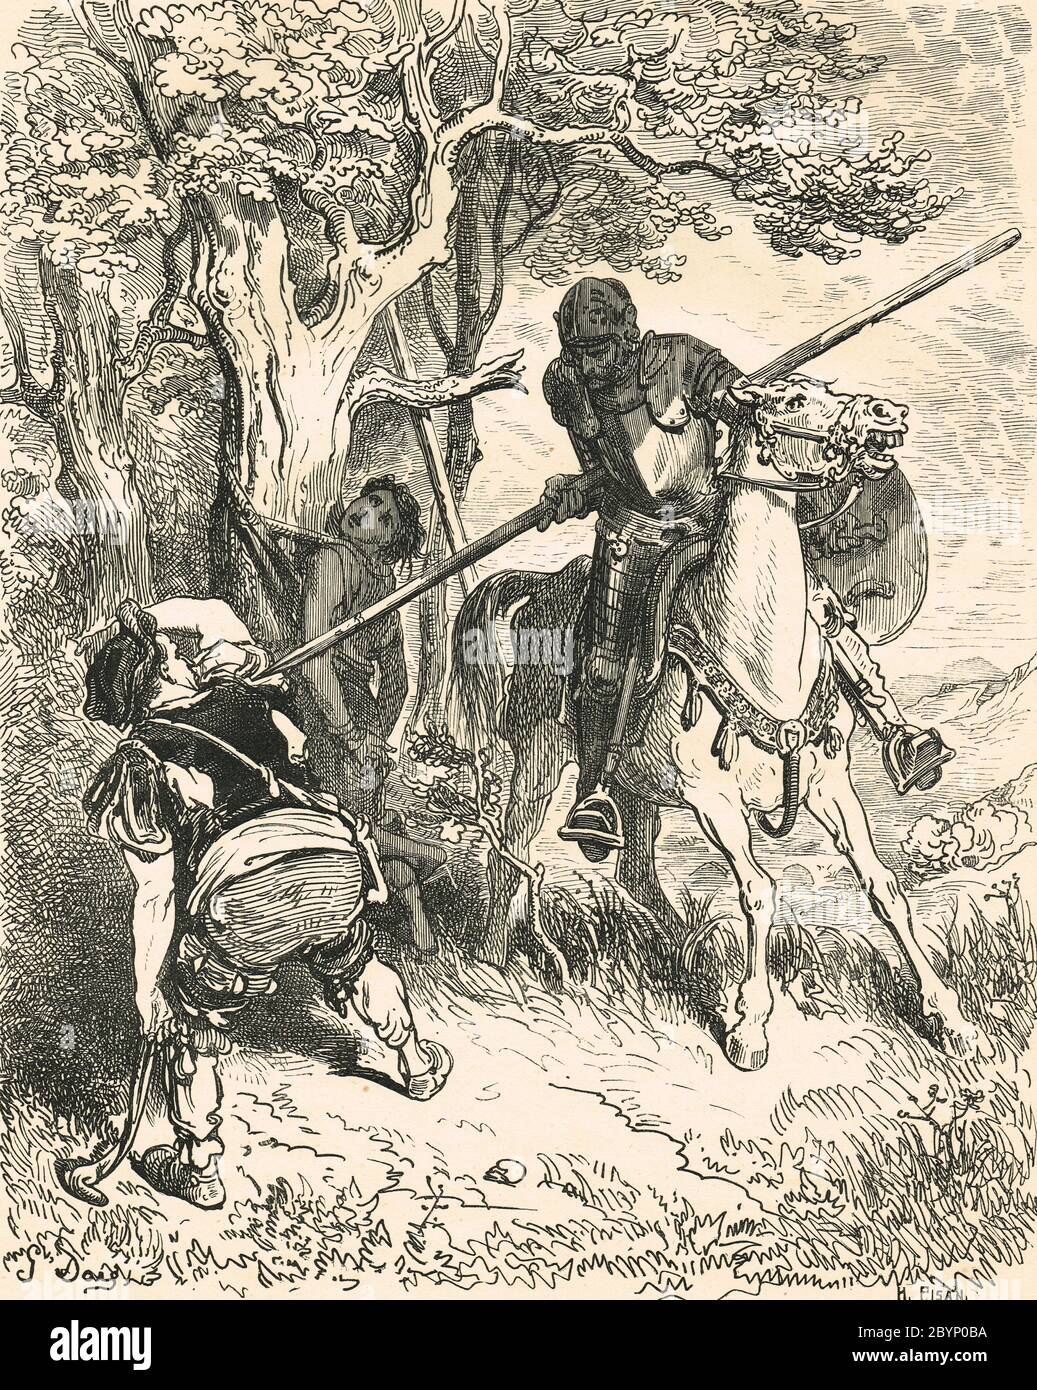 Don Chisciotte liberando il ragazzo di nome Andres, legato ad un albero, che viene picchiato dal suo padrone. Illustrazione di Gustave Dore Foto Stock